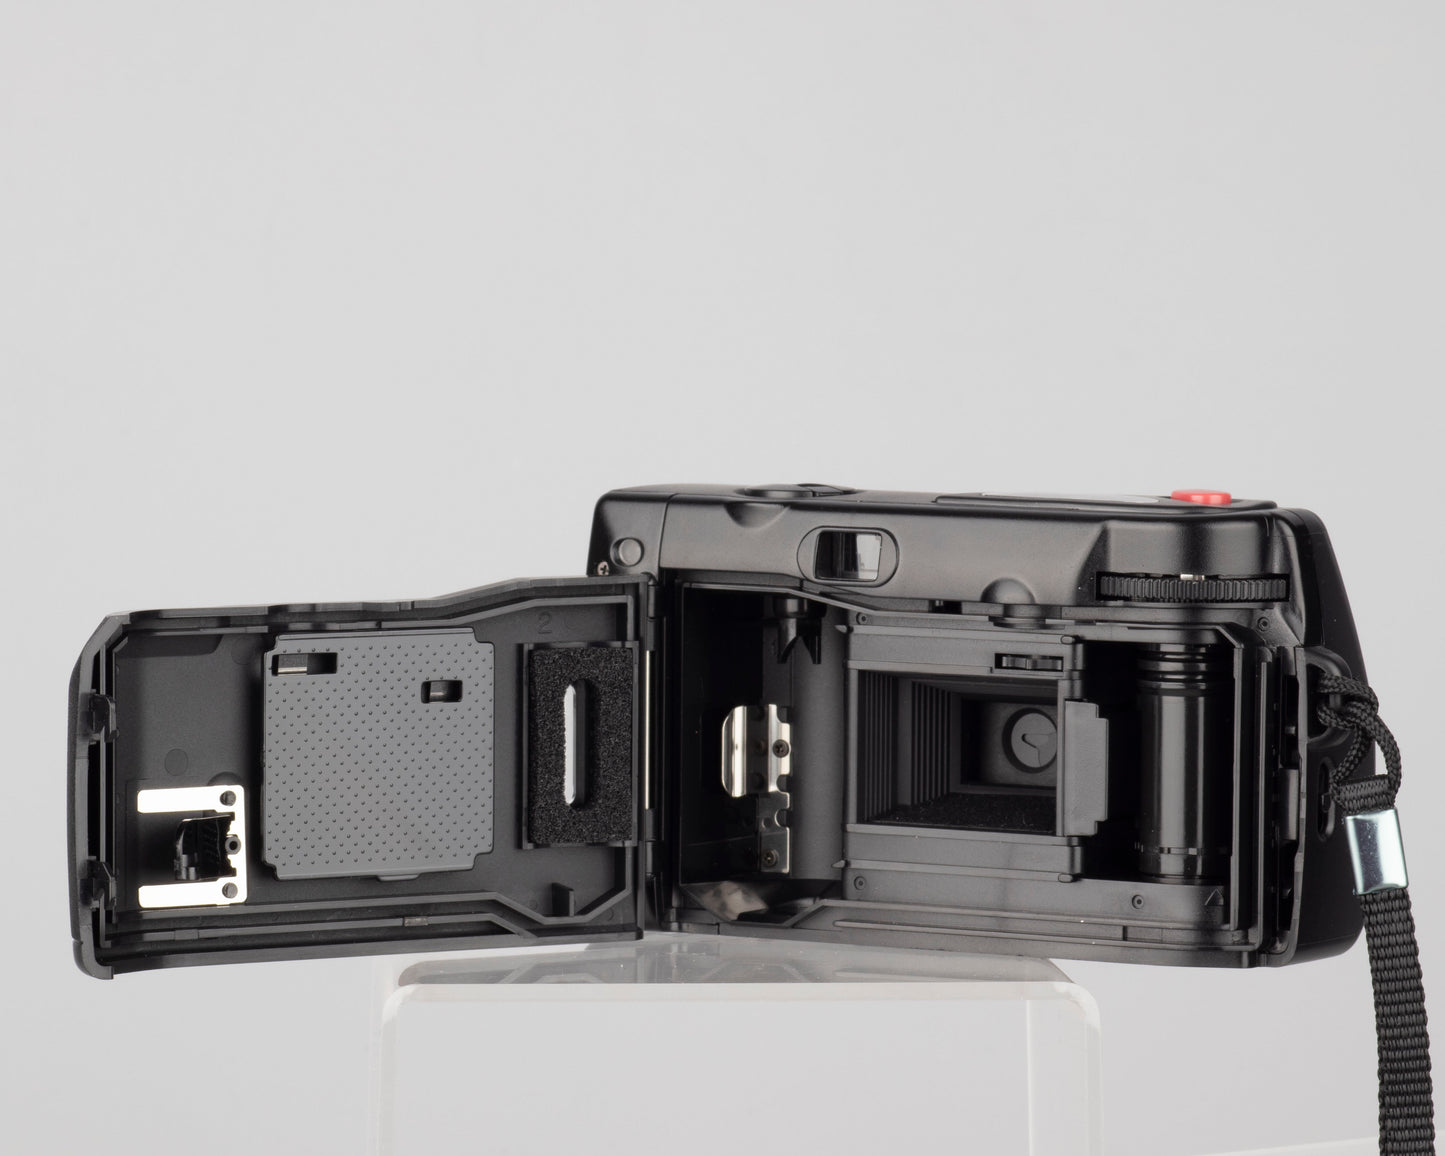 Minolta Memory Maker 35mm film camera (serial 5966302)